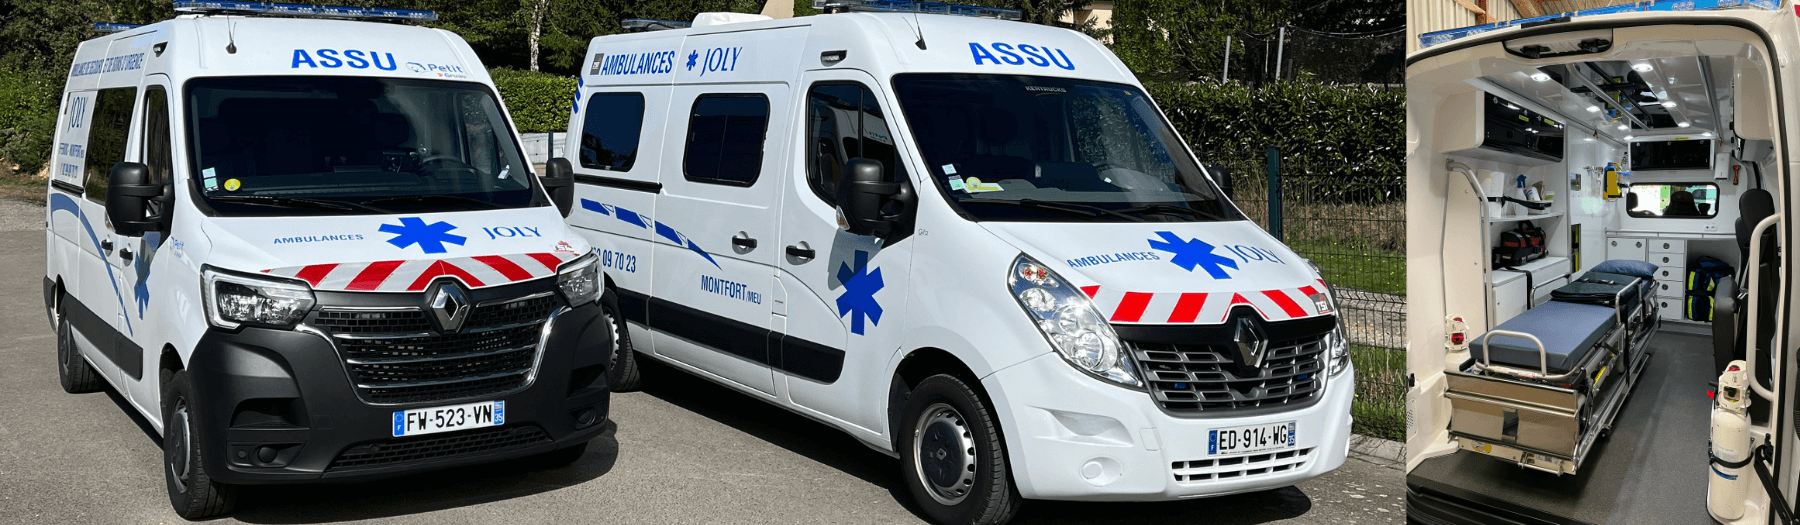 Ambulances VSL Montfort-sur-Meu / Iffendic